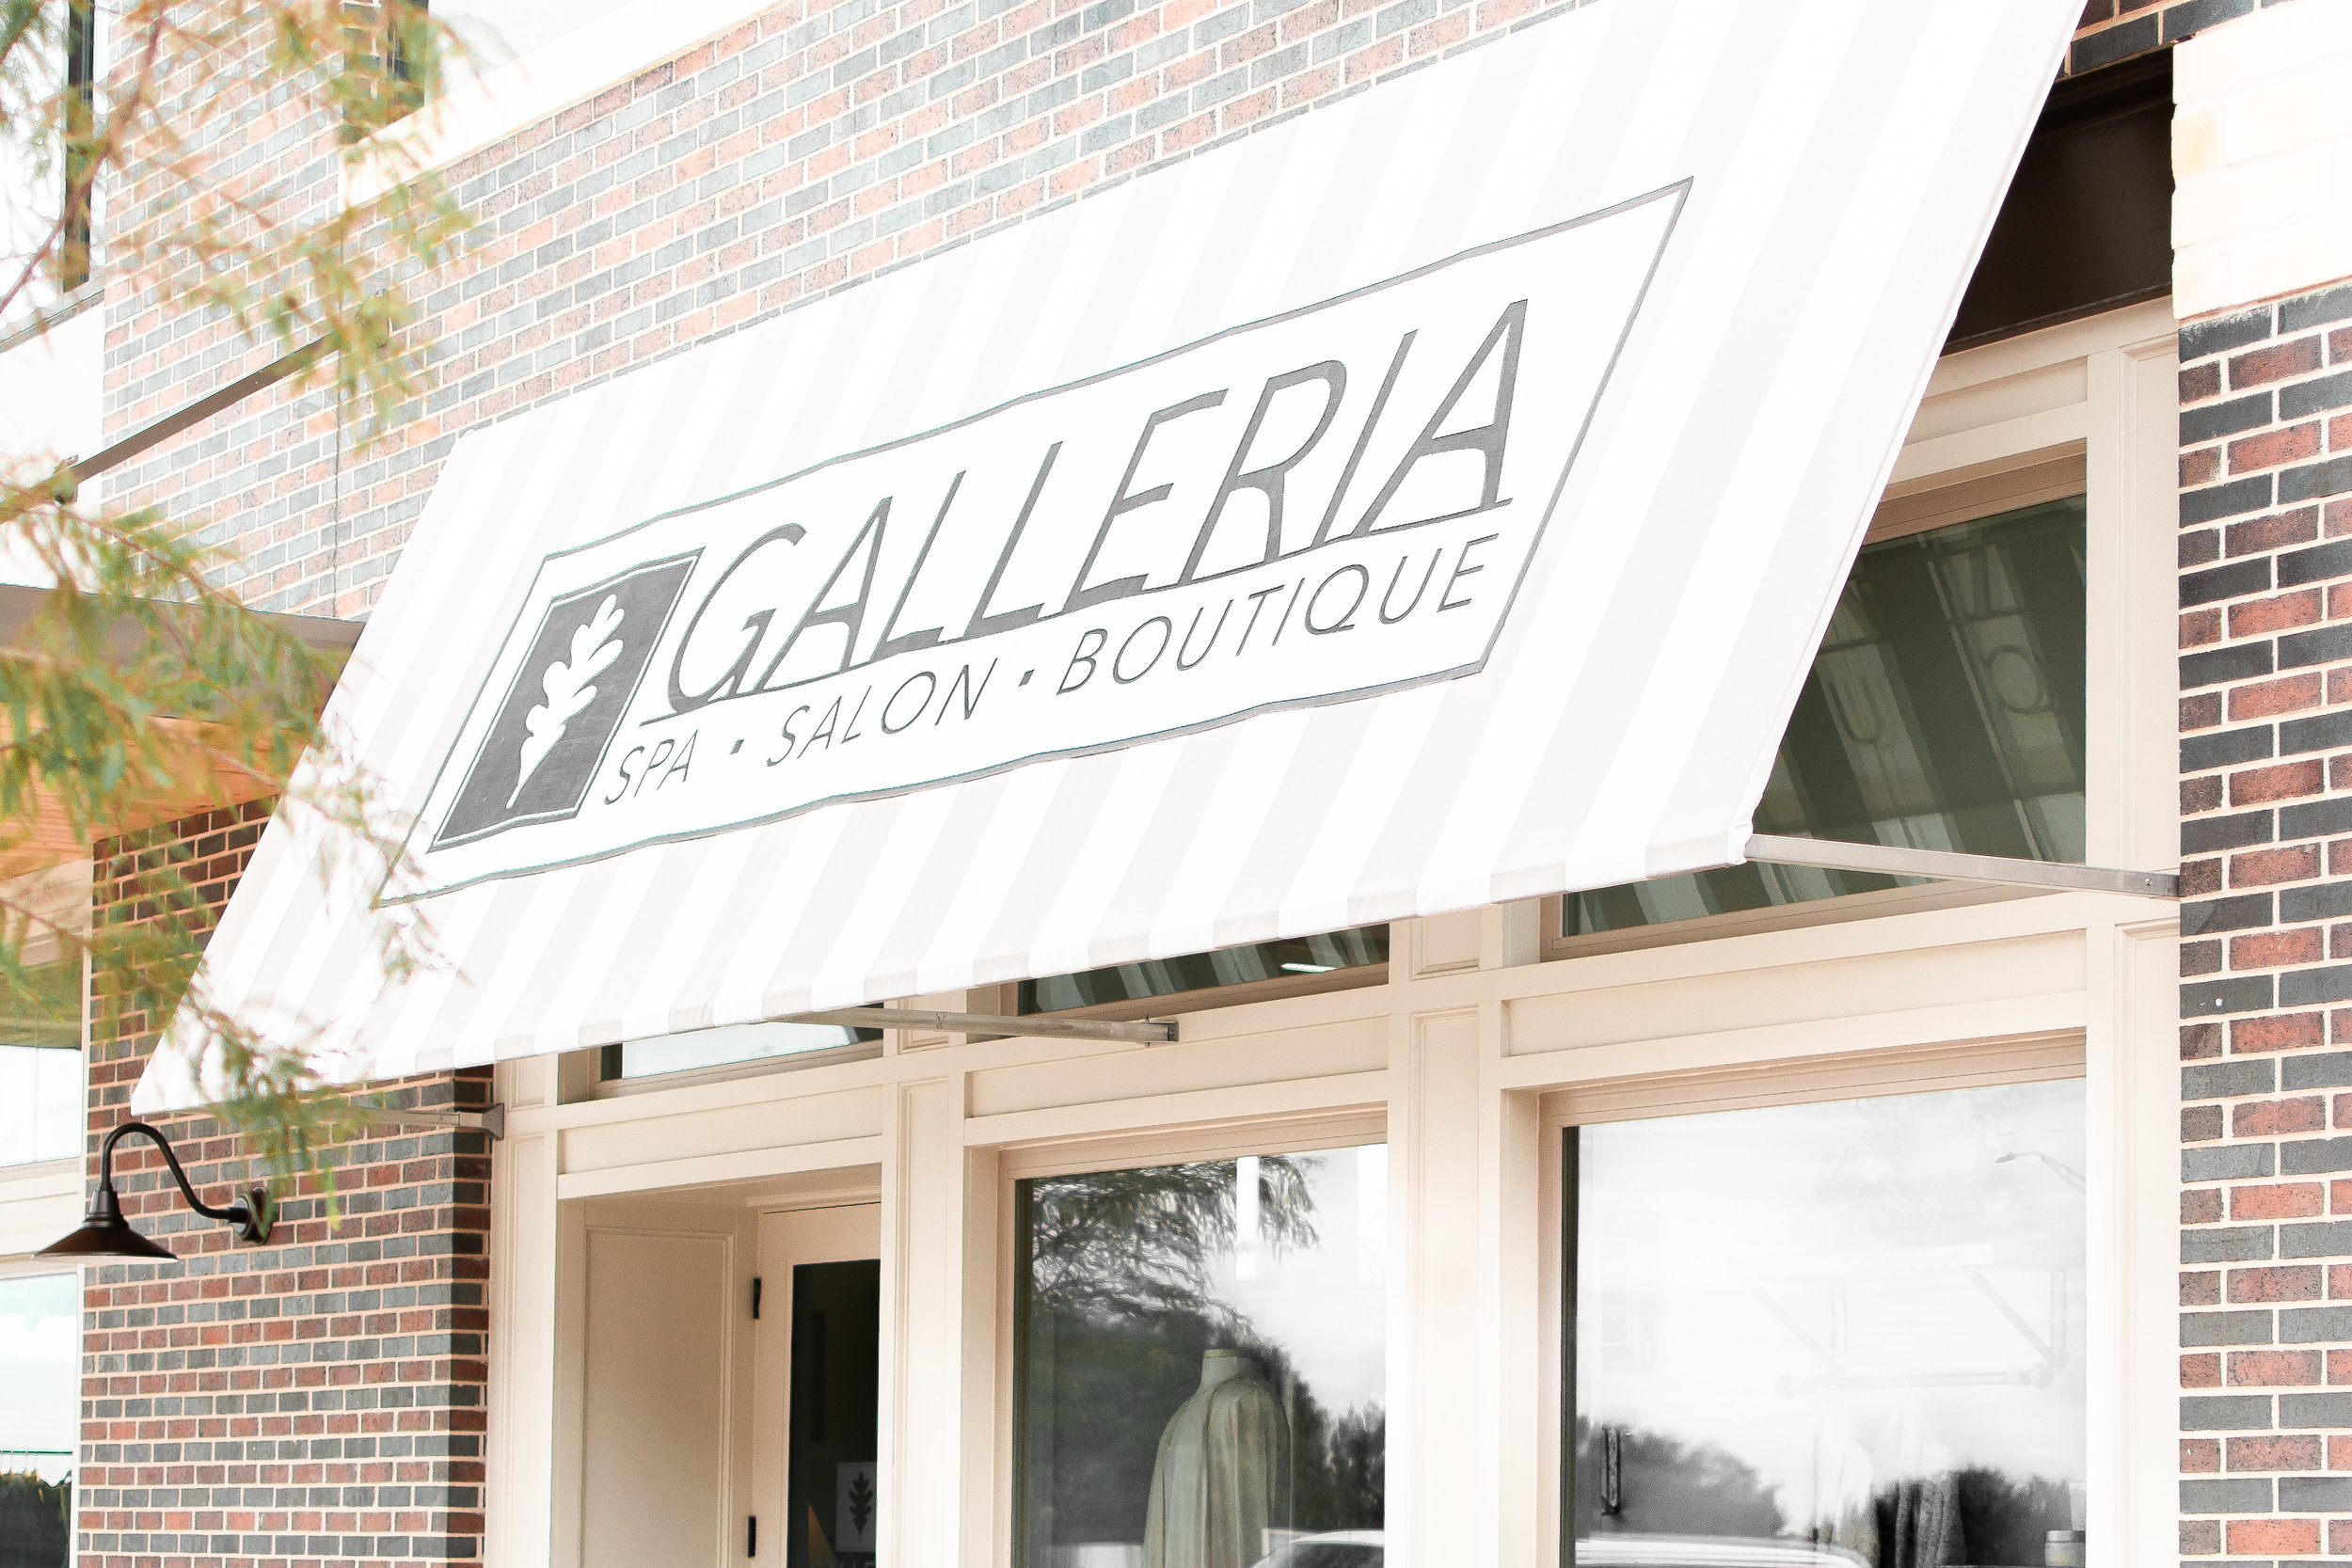 Galleria Spa Salon Boutique